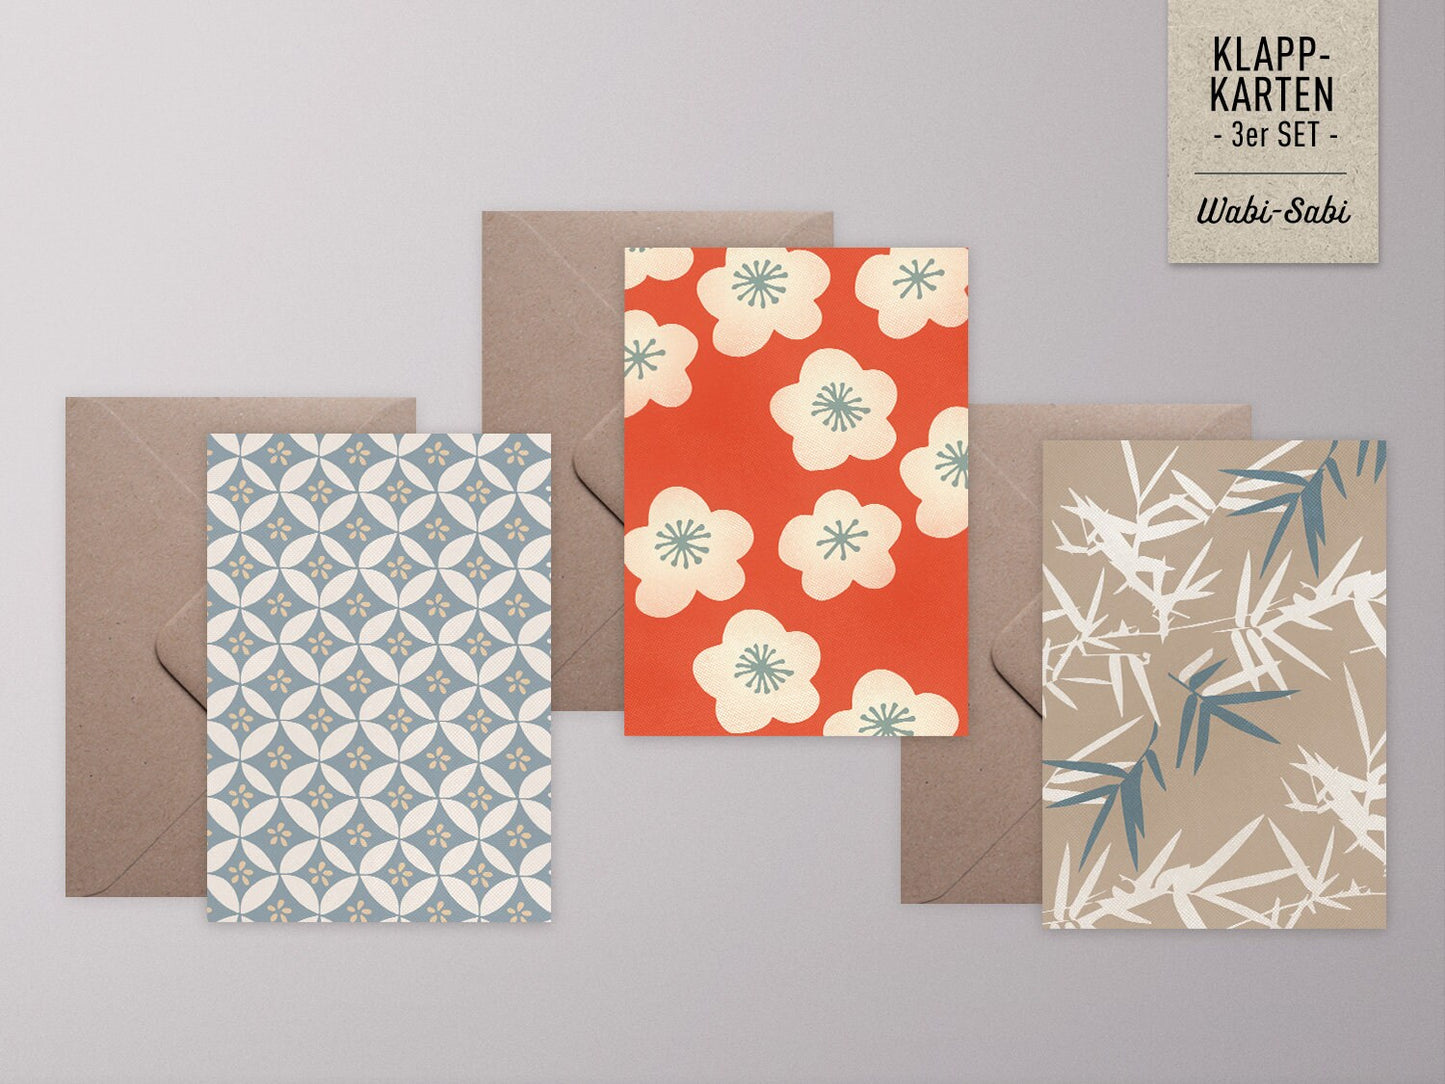 Grußkarten-Set ›WABI-SABI‹, japanische Muster mit Bambus und Kirschblüte